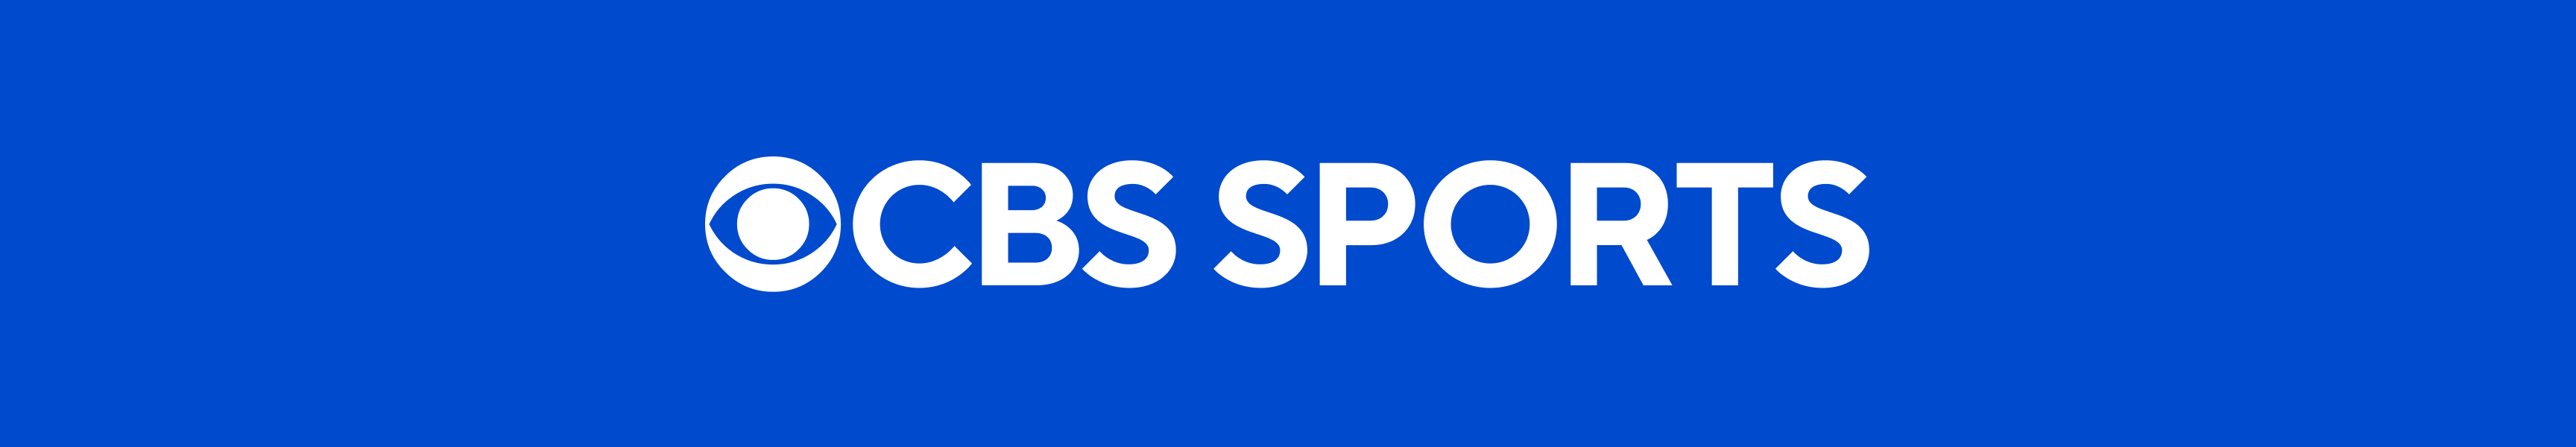 CBS Sports Sweats à capuche et pulls molletonnés